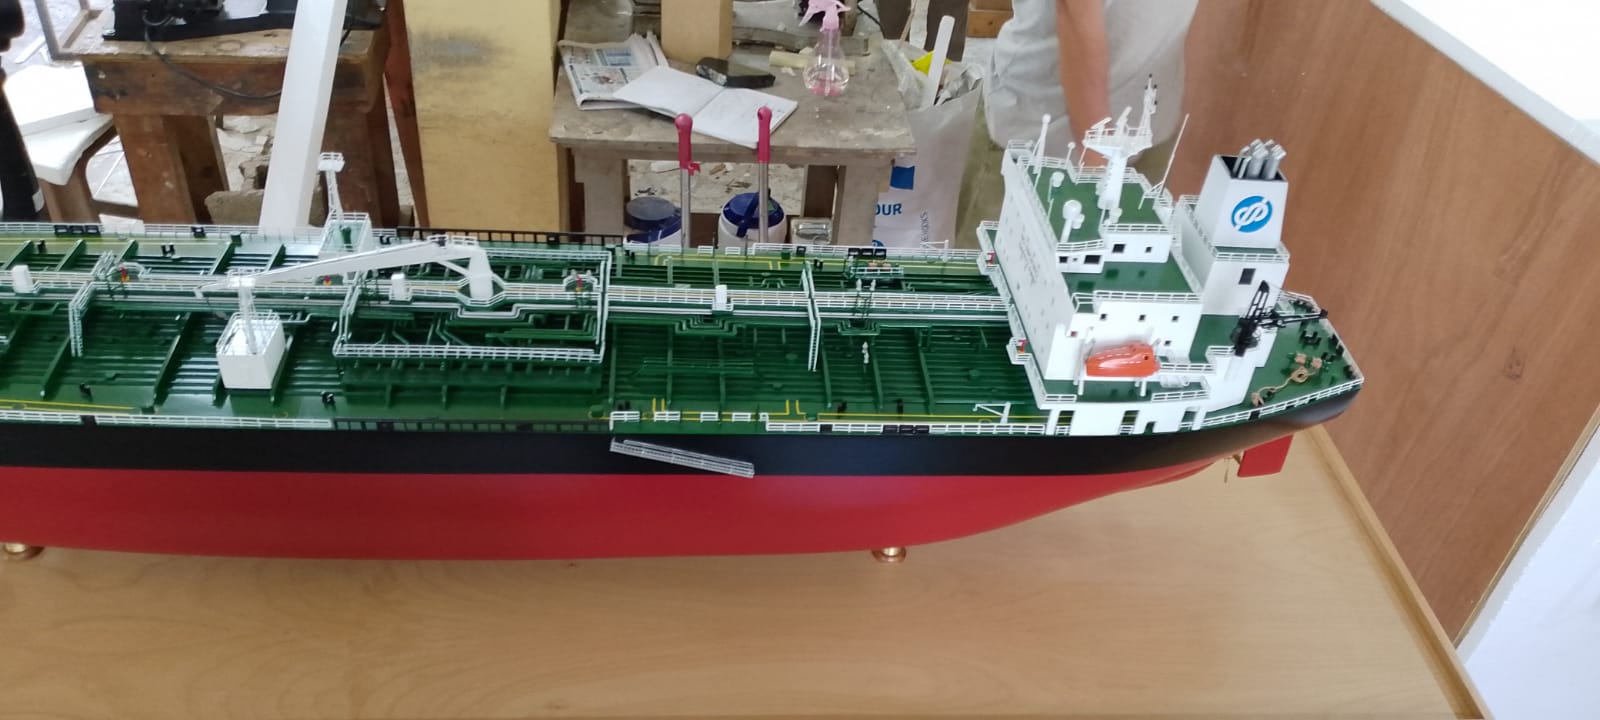 Arctic Breeze Model Ship - PSM0002